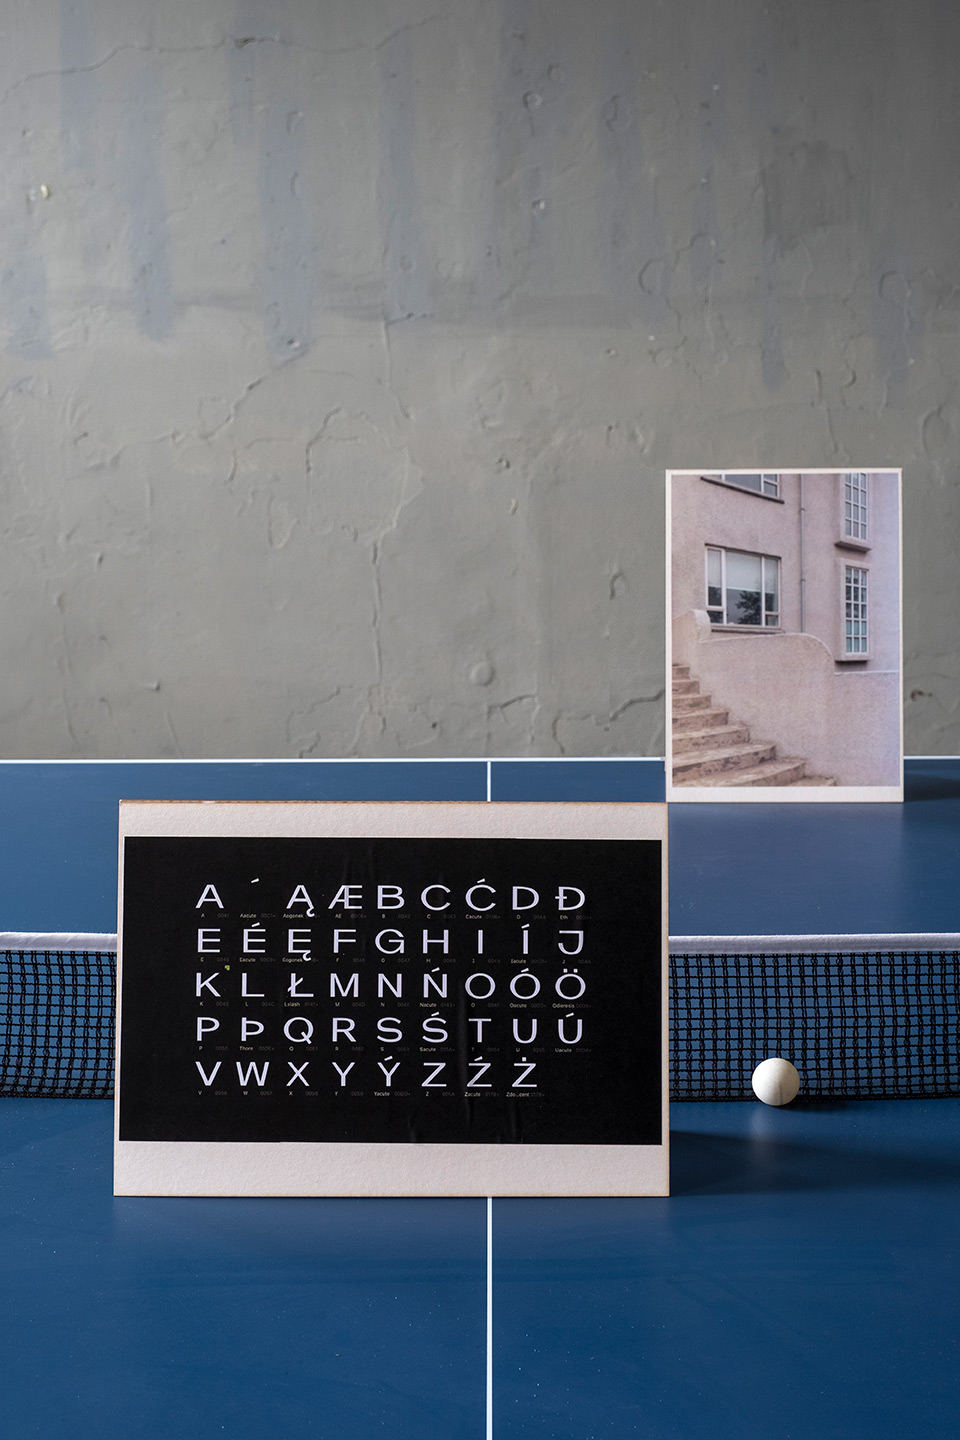 Karty ze zdjęciami architektury islandzkiej z nadrukowanymi literami z islandzkiego. Karty są położone na stole do ping ponga. 